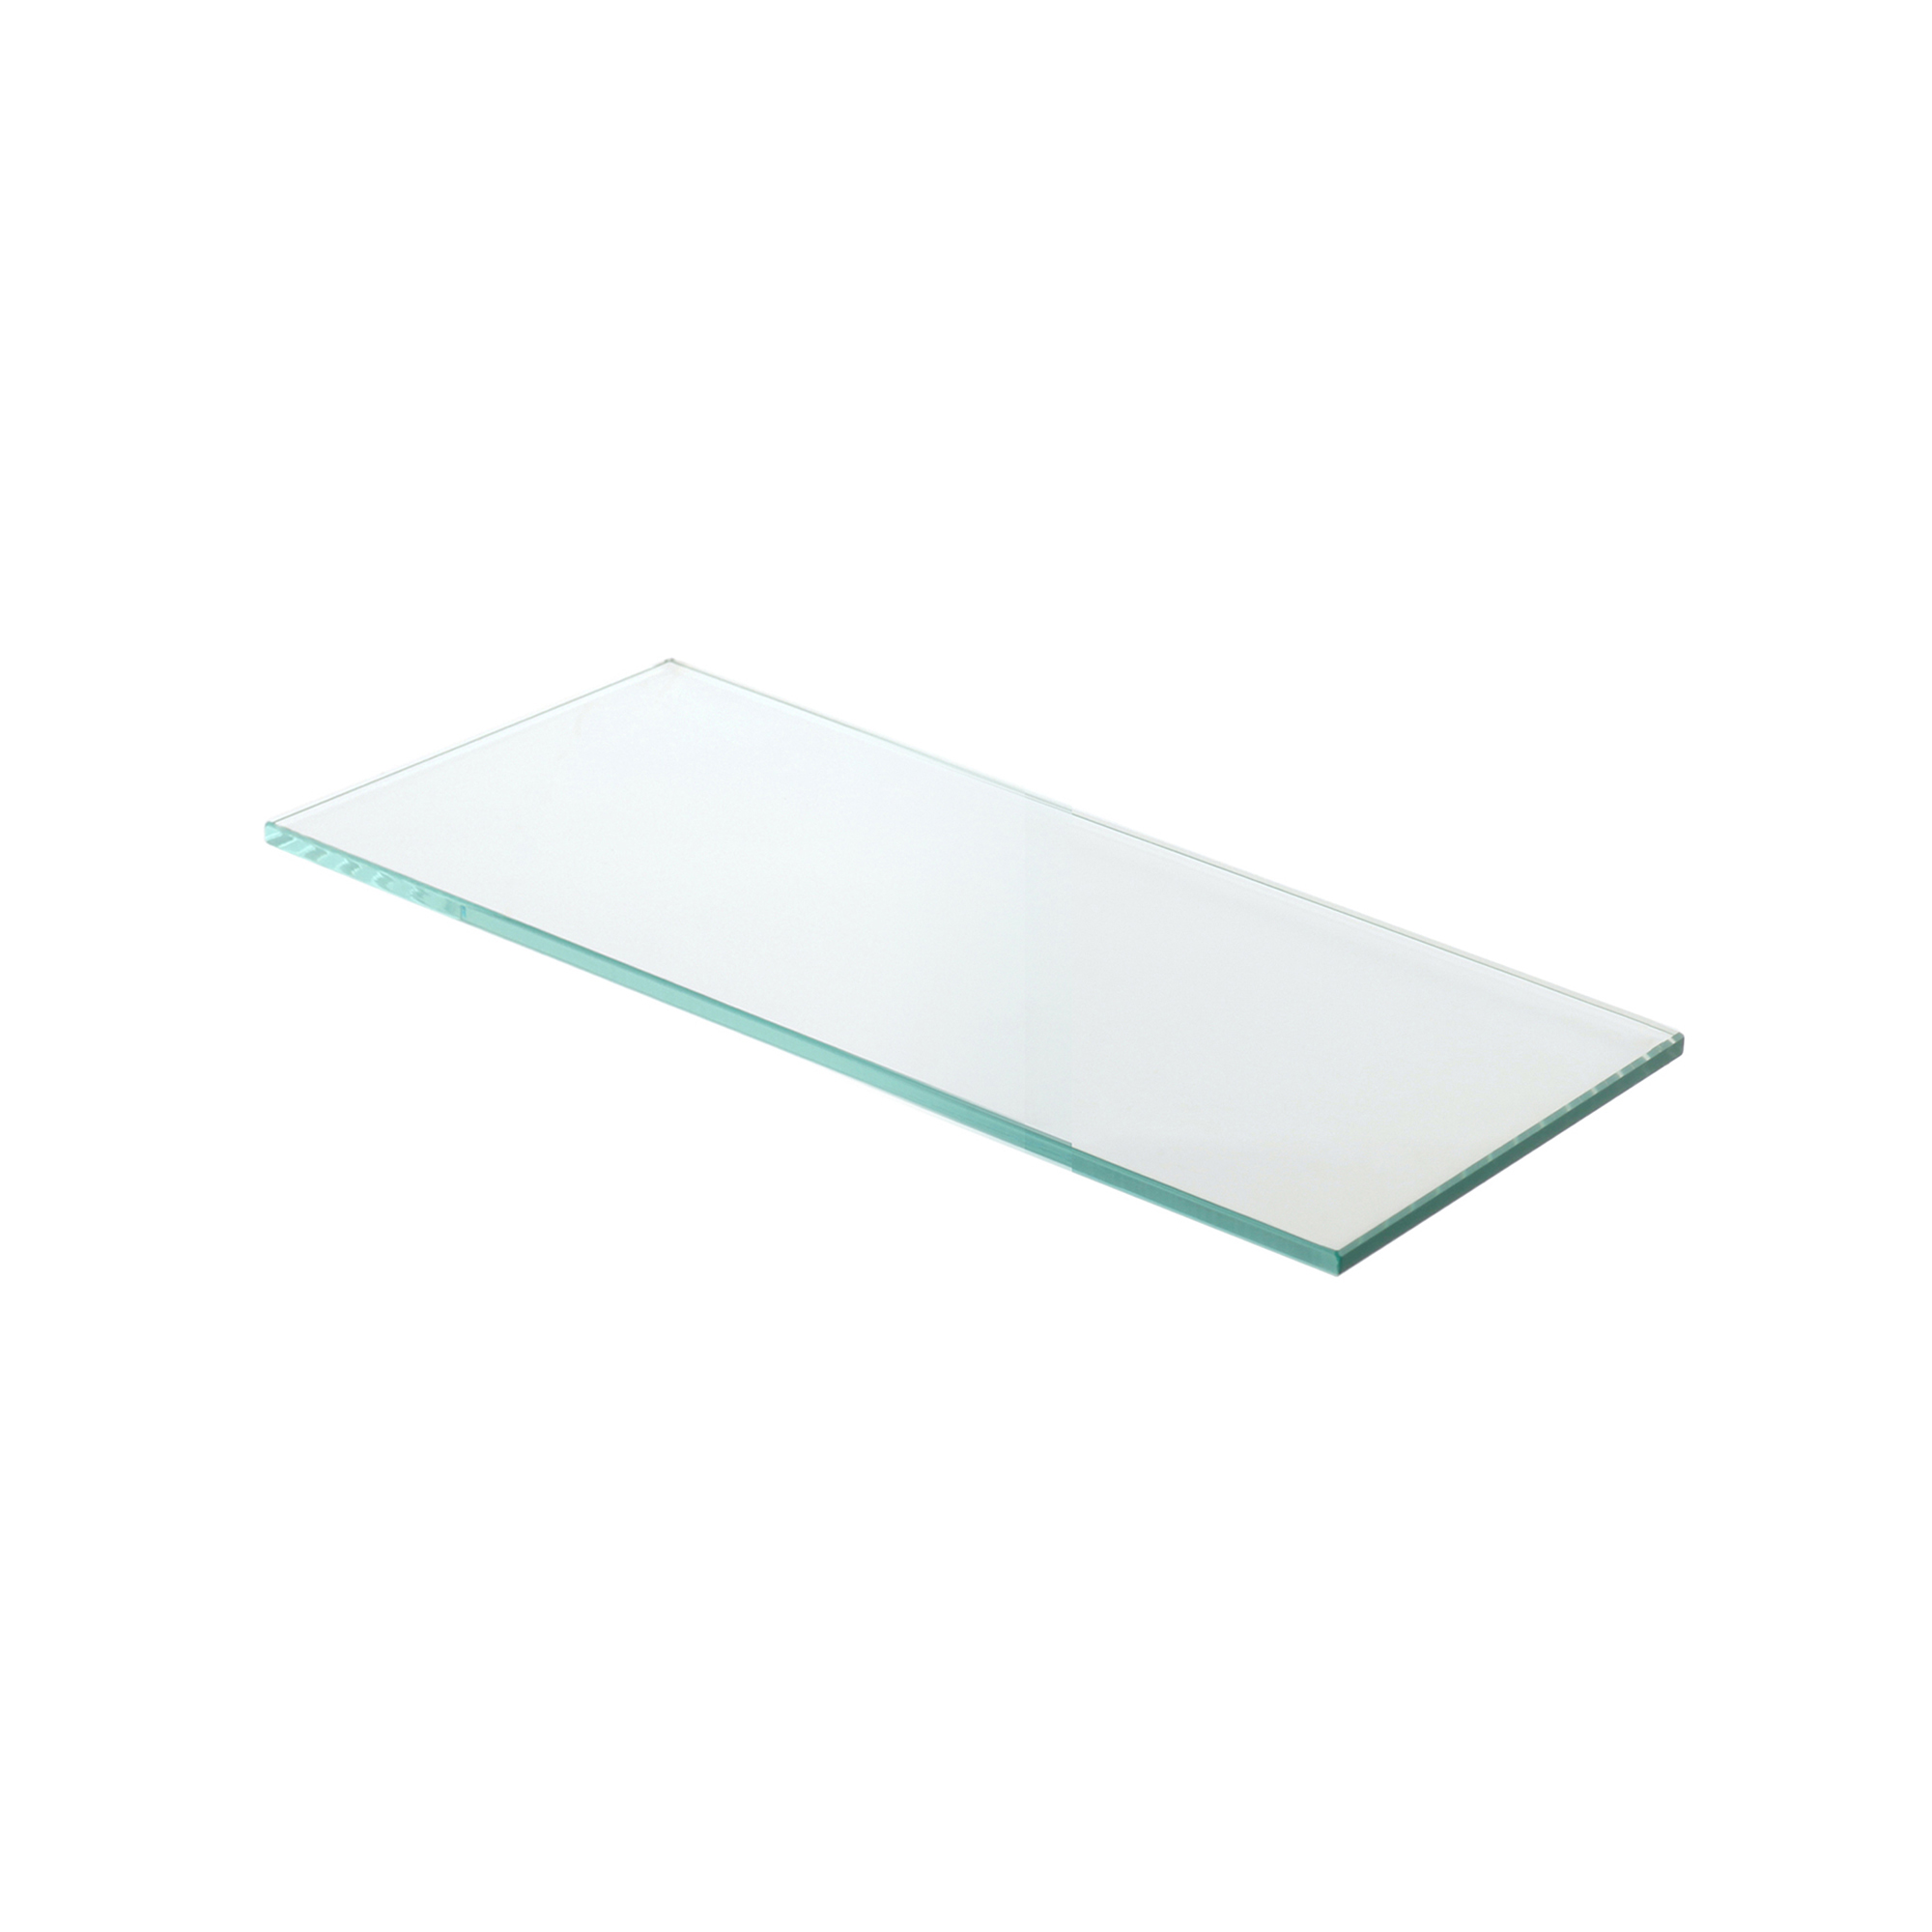 Estante de Cristal Transparente Medidas 300*6*120 mm | Espesor de la Balda: 6 mm | 1 Unidad